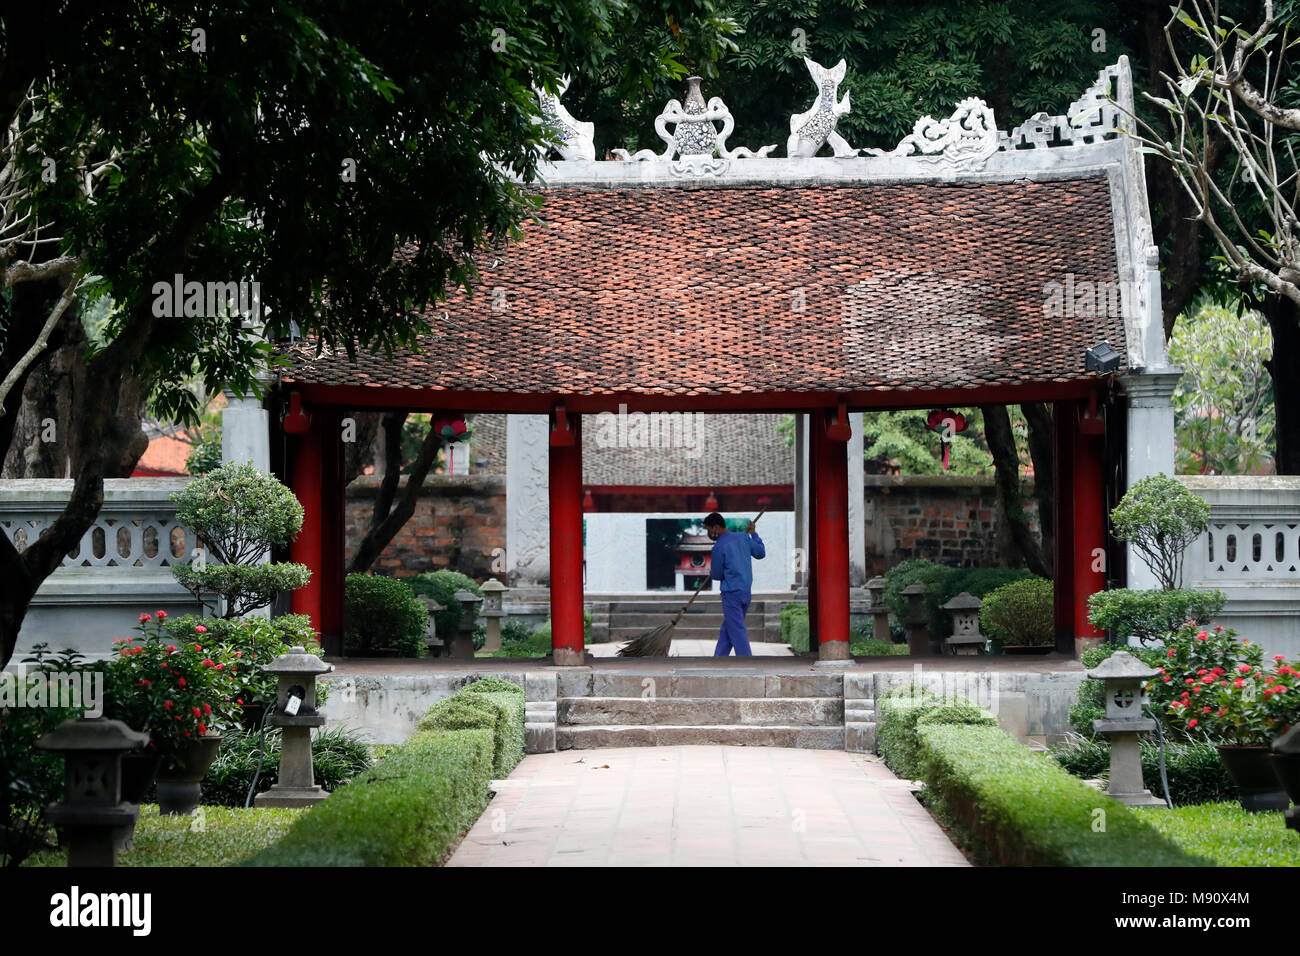 Le Temple de la littérature est temple qui était autrefois un centre d'apprentissage à Hanoi. Hanoi. Le Vietnam. Banque D'Images